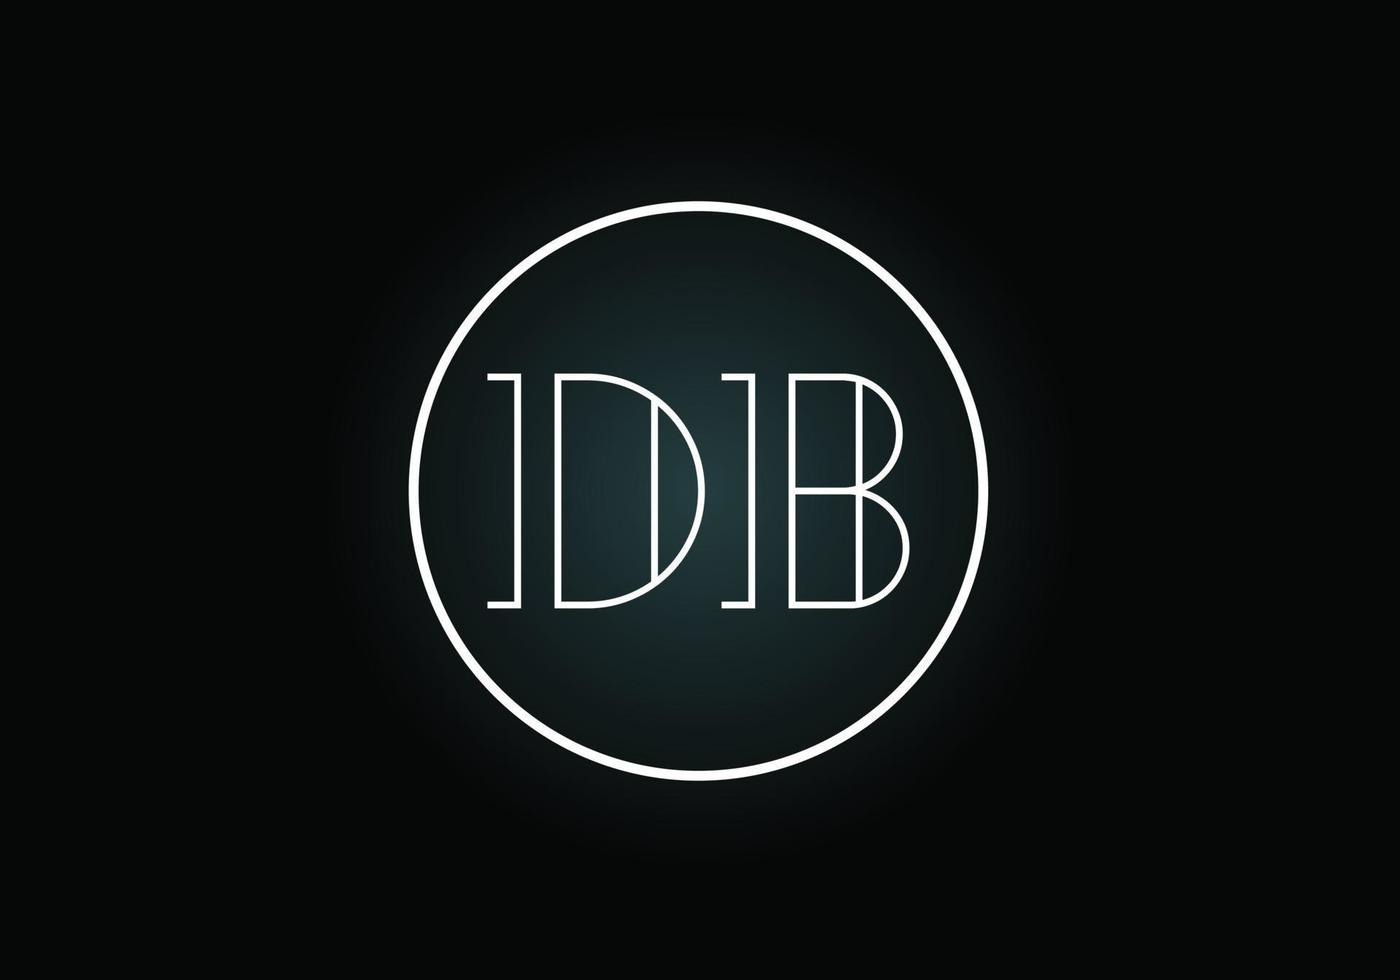 lettre initiale vecteur de conception de logo db. symbole de l'alphabet graphique pour l'identité de l'entreprise